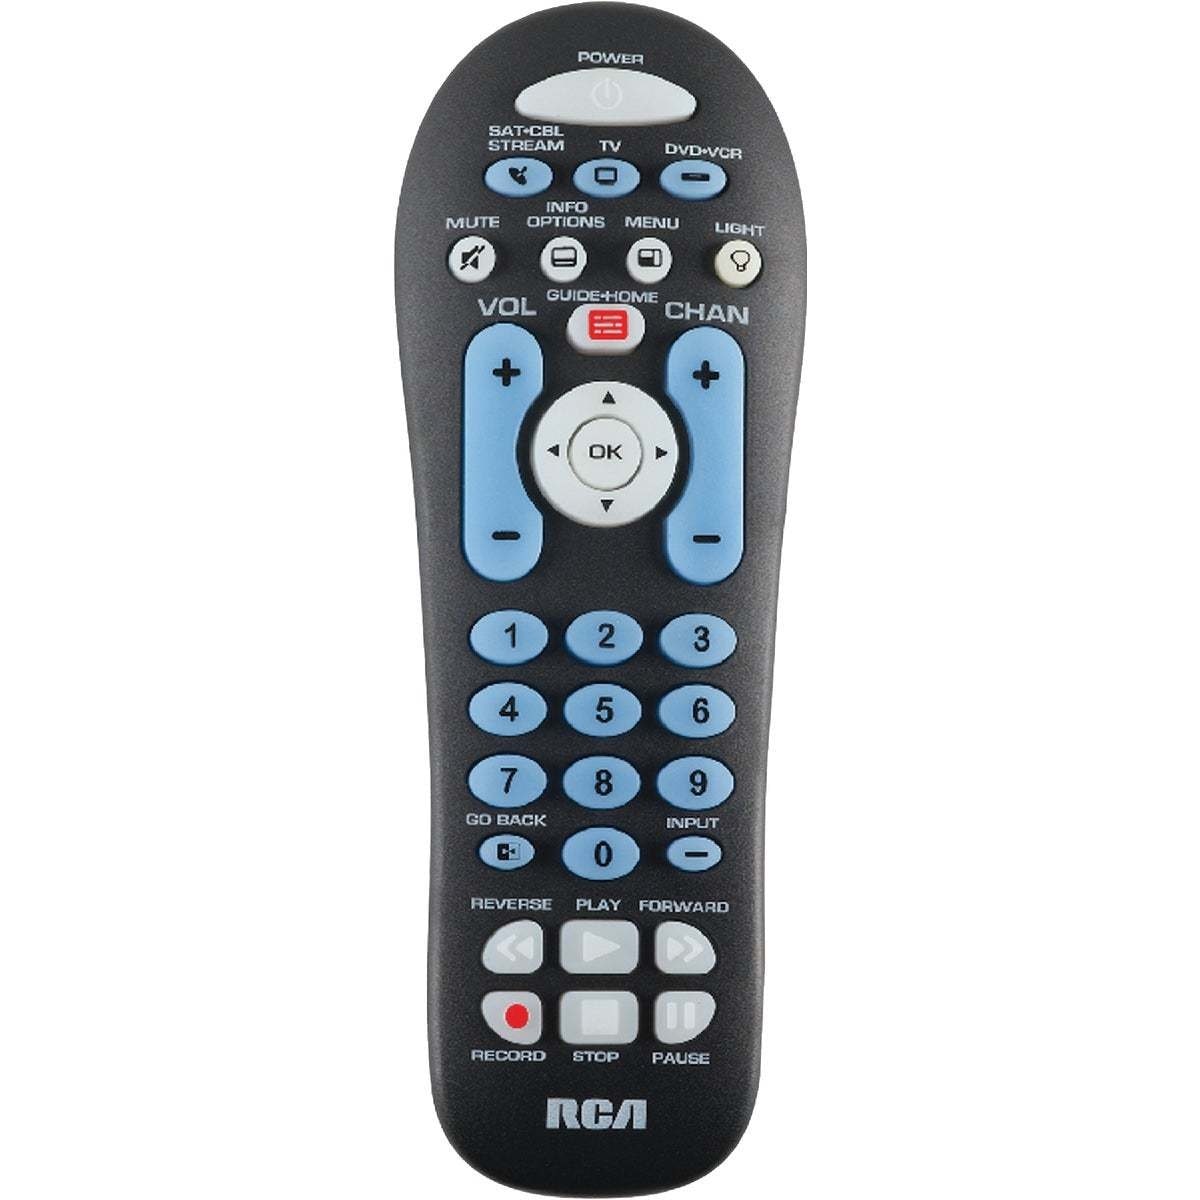 RCA 3-Device Universal Black Remote Control - 1 Ea...